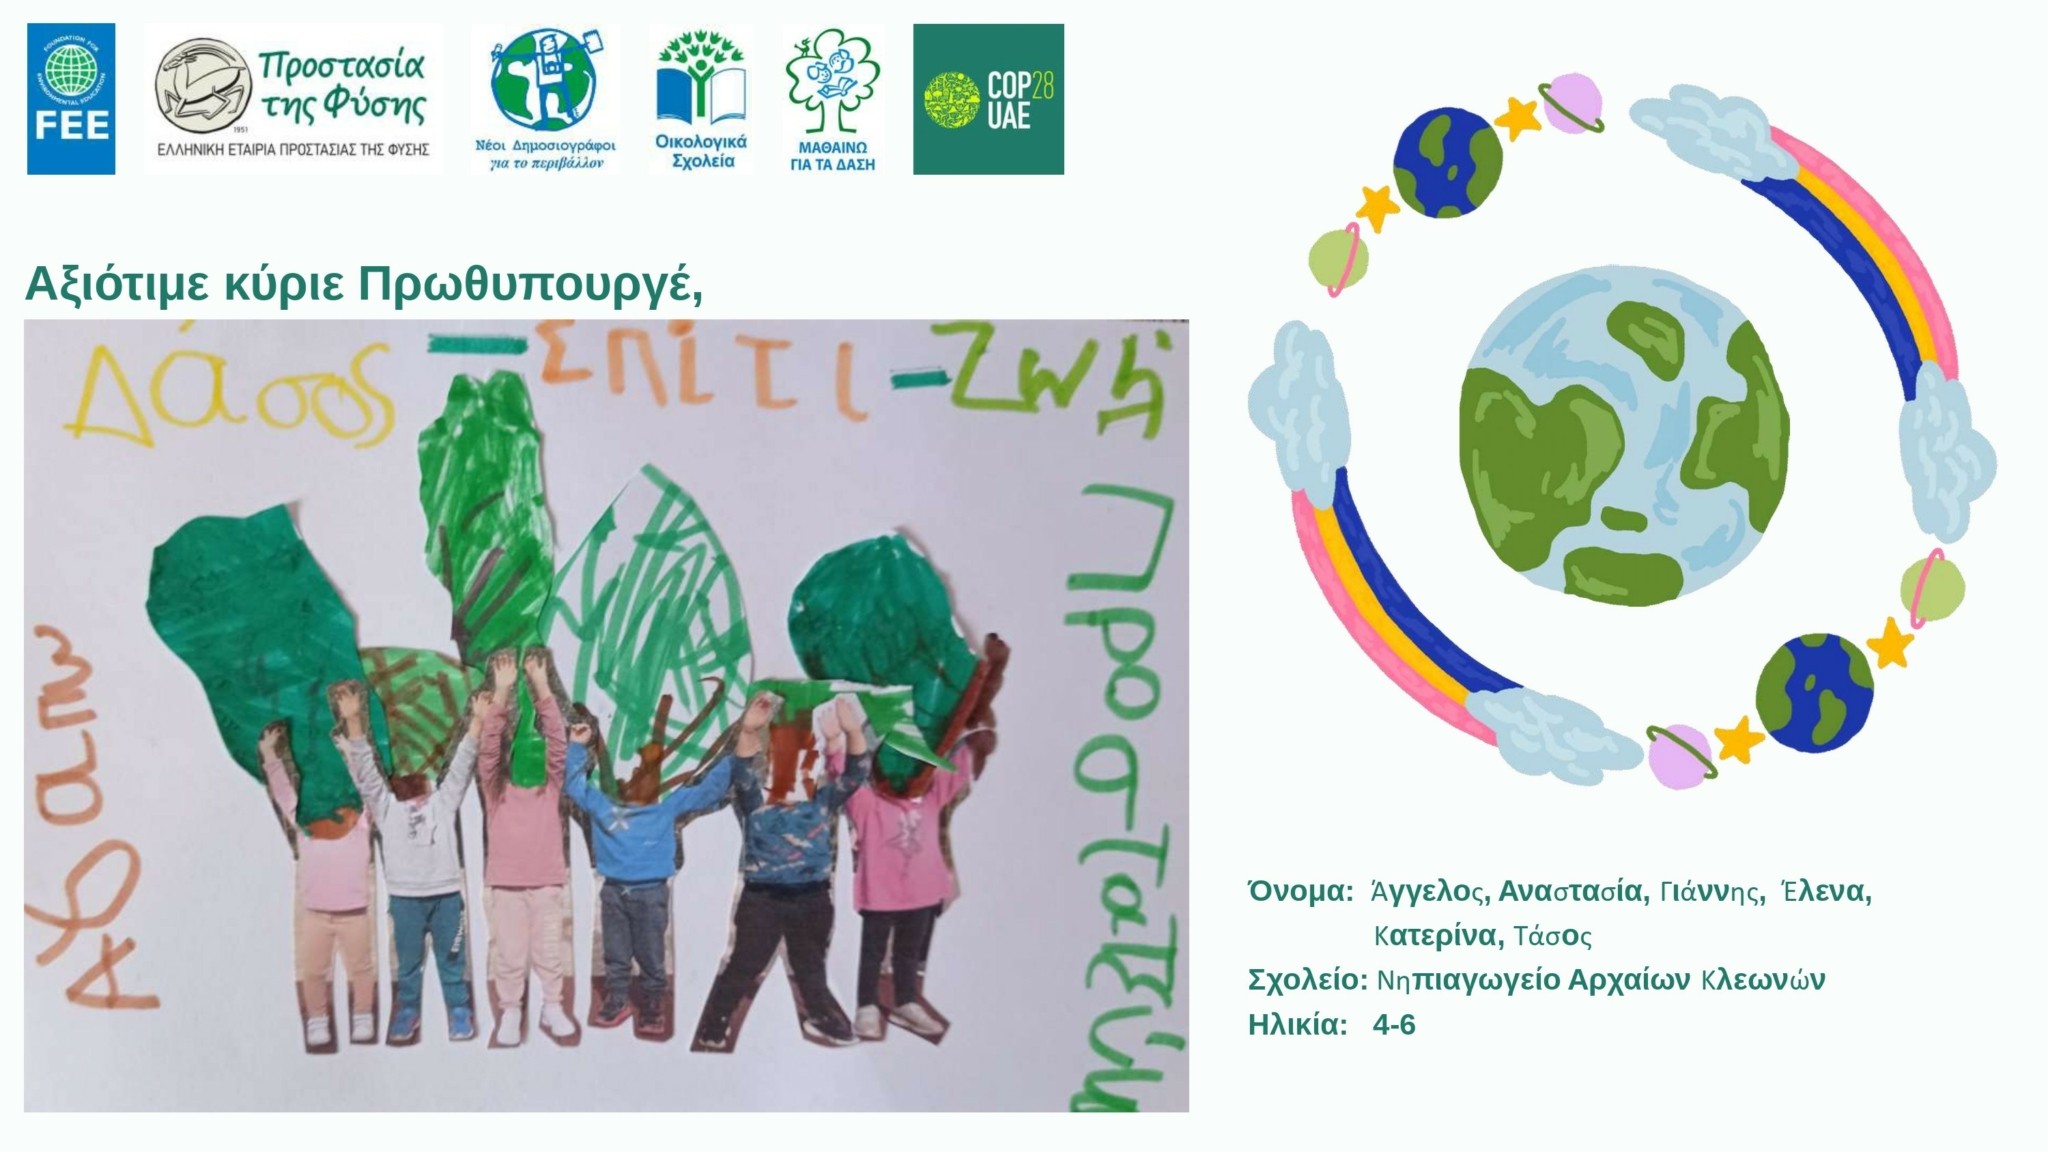 COP28: Τα παιδιά στέλνουν τα μηνύματά τους στον Πρωθυπουργό για την Κλιματική Κρίση και το Περιβάλλον! (pics)